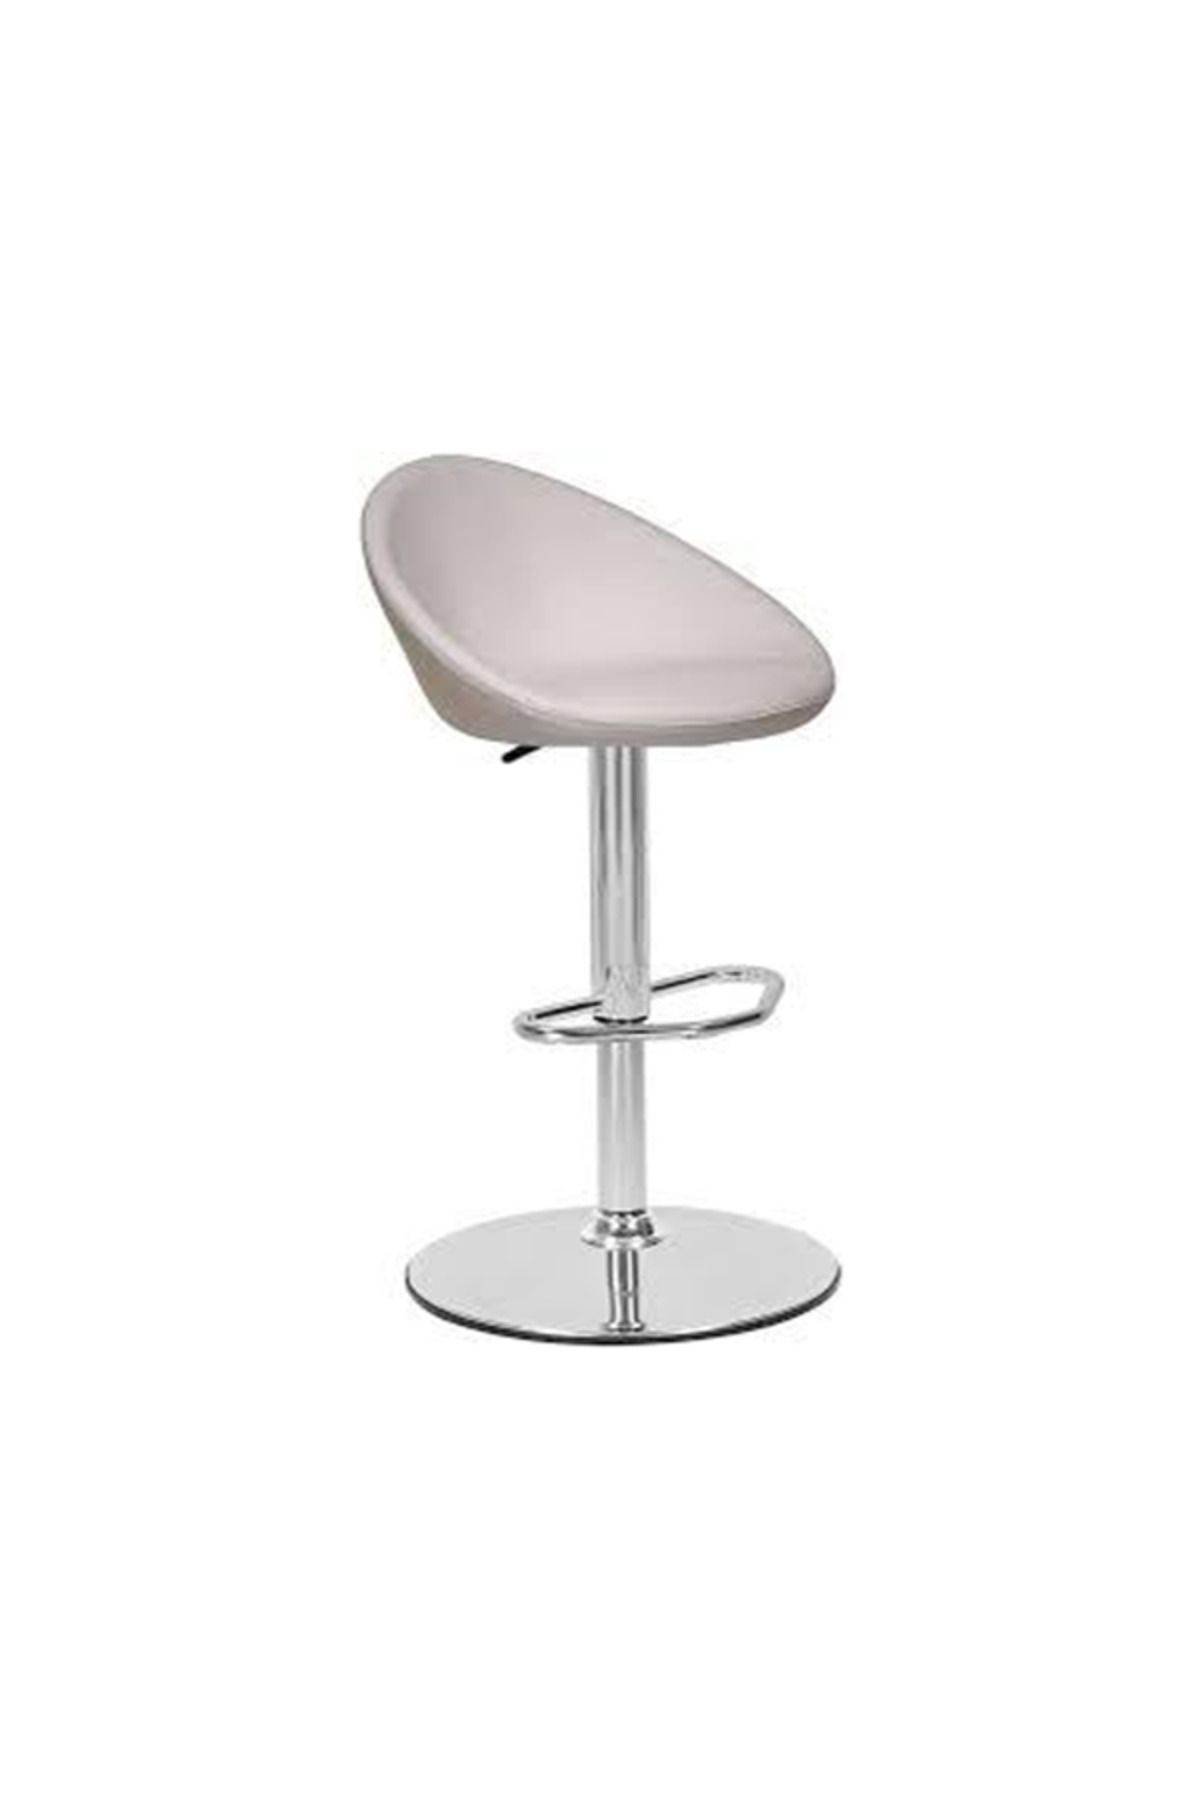 Krcn Bar sandalyesi - Metal Ayaklı Bar Sandalyesi - Tabure - Mutfak Sandalyesi - Cafe Sandalyesi